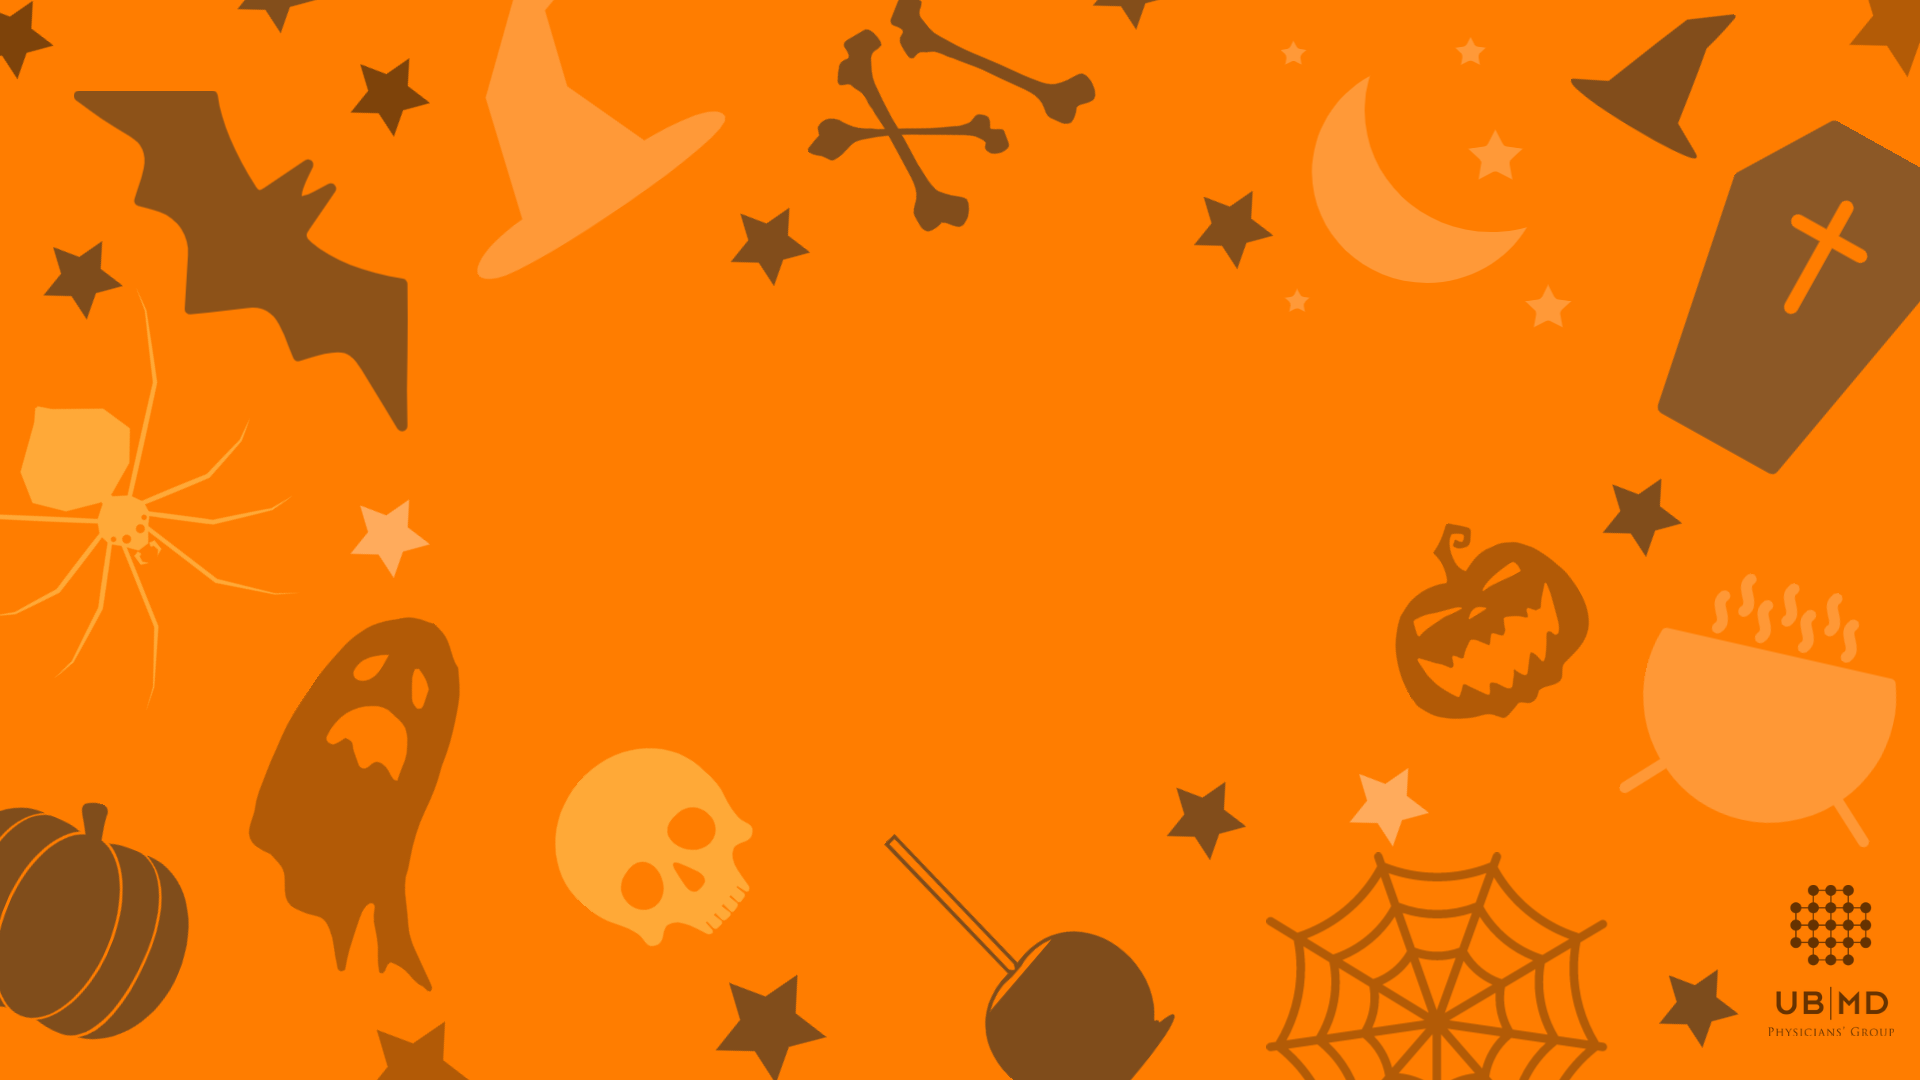 Halloween đang đến gần, hãy bay vào không gian ảo với nhóm Bác sĩ UBMD thông qua hình nền Halloween ảo cực kỳ đặc sắc. Với hình ảnh kinh dị và bất thường, đây chắc chắn sẽ là một trải nghiệm đáng nhớ cho bạn và đội nhóm của bạn.